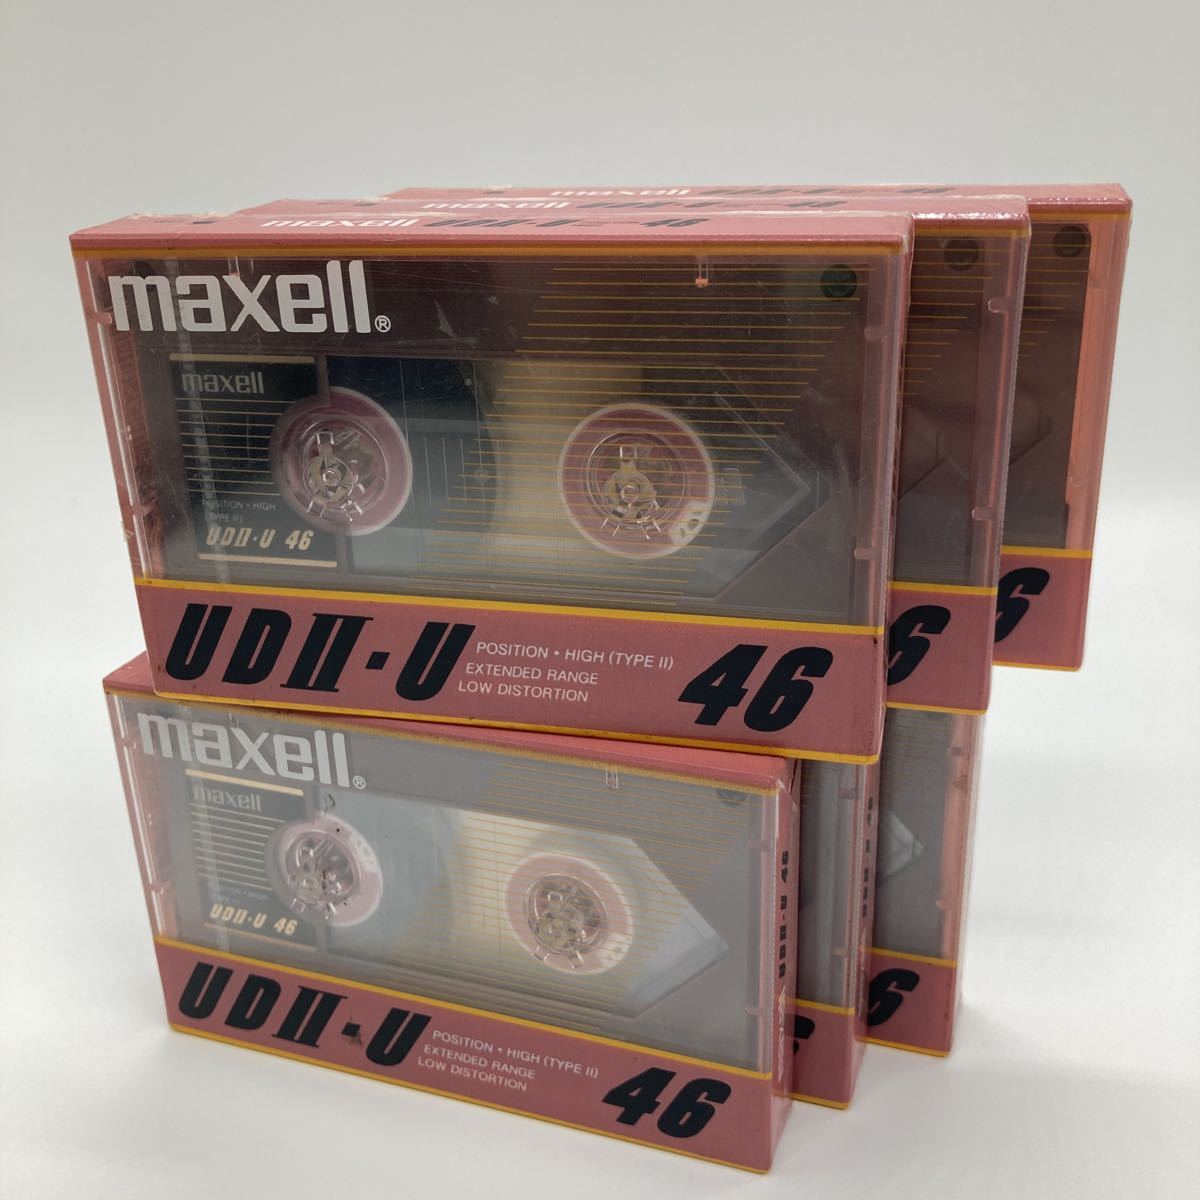 maxell ハイポジション カセットテープ UDⅡ-U 46 (マクセル ハイポジ ud2-u46) Yahoo!フリマ（旧）